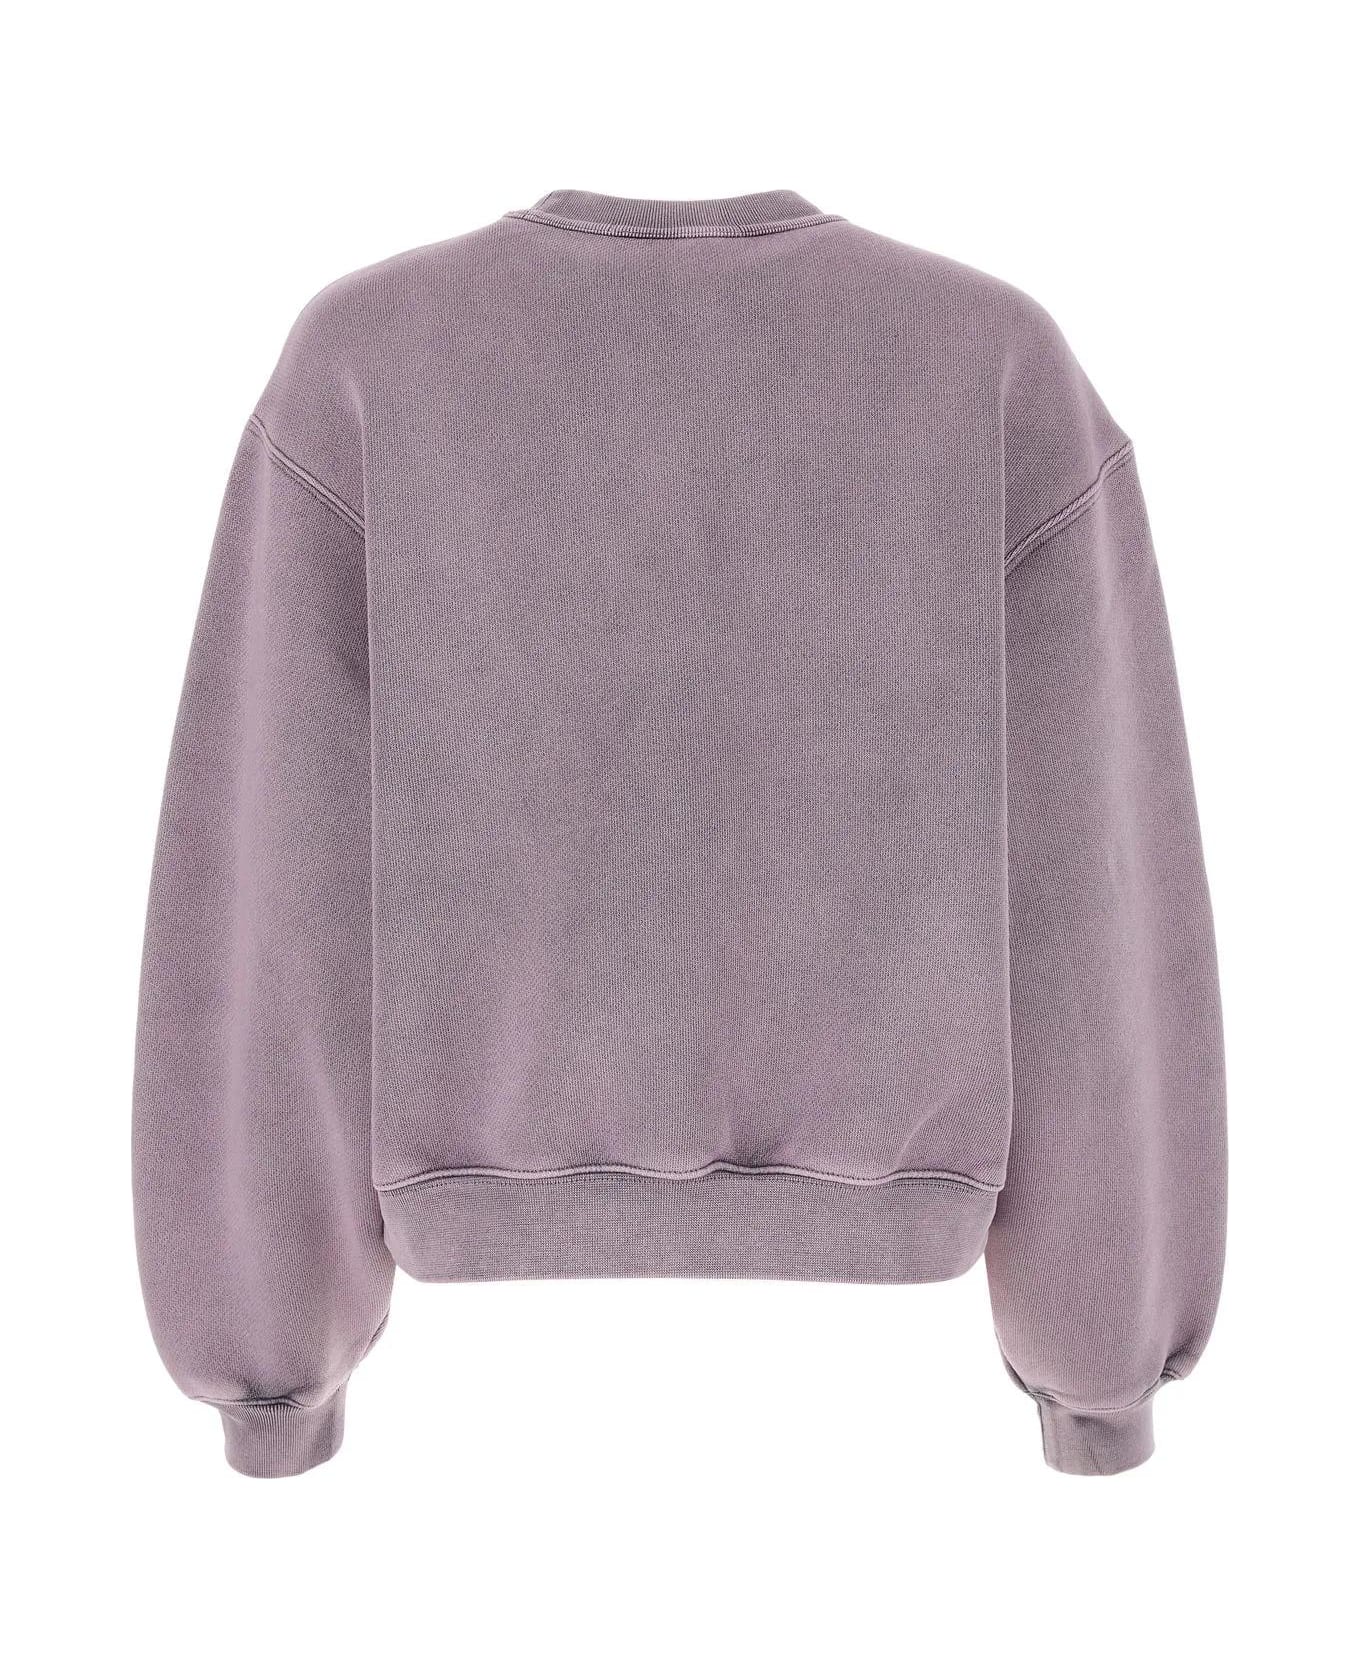 Alexander Wang Pink Cotton Blend Sweatshirt - A Acid Pink Lavender フリース